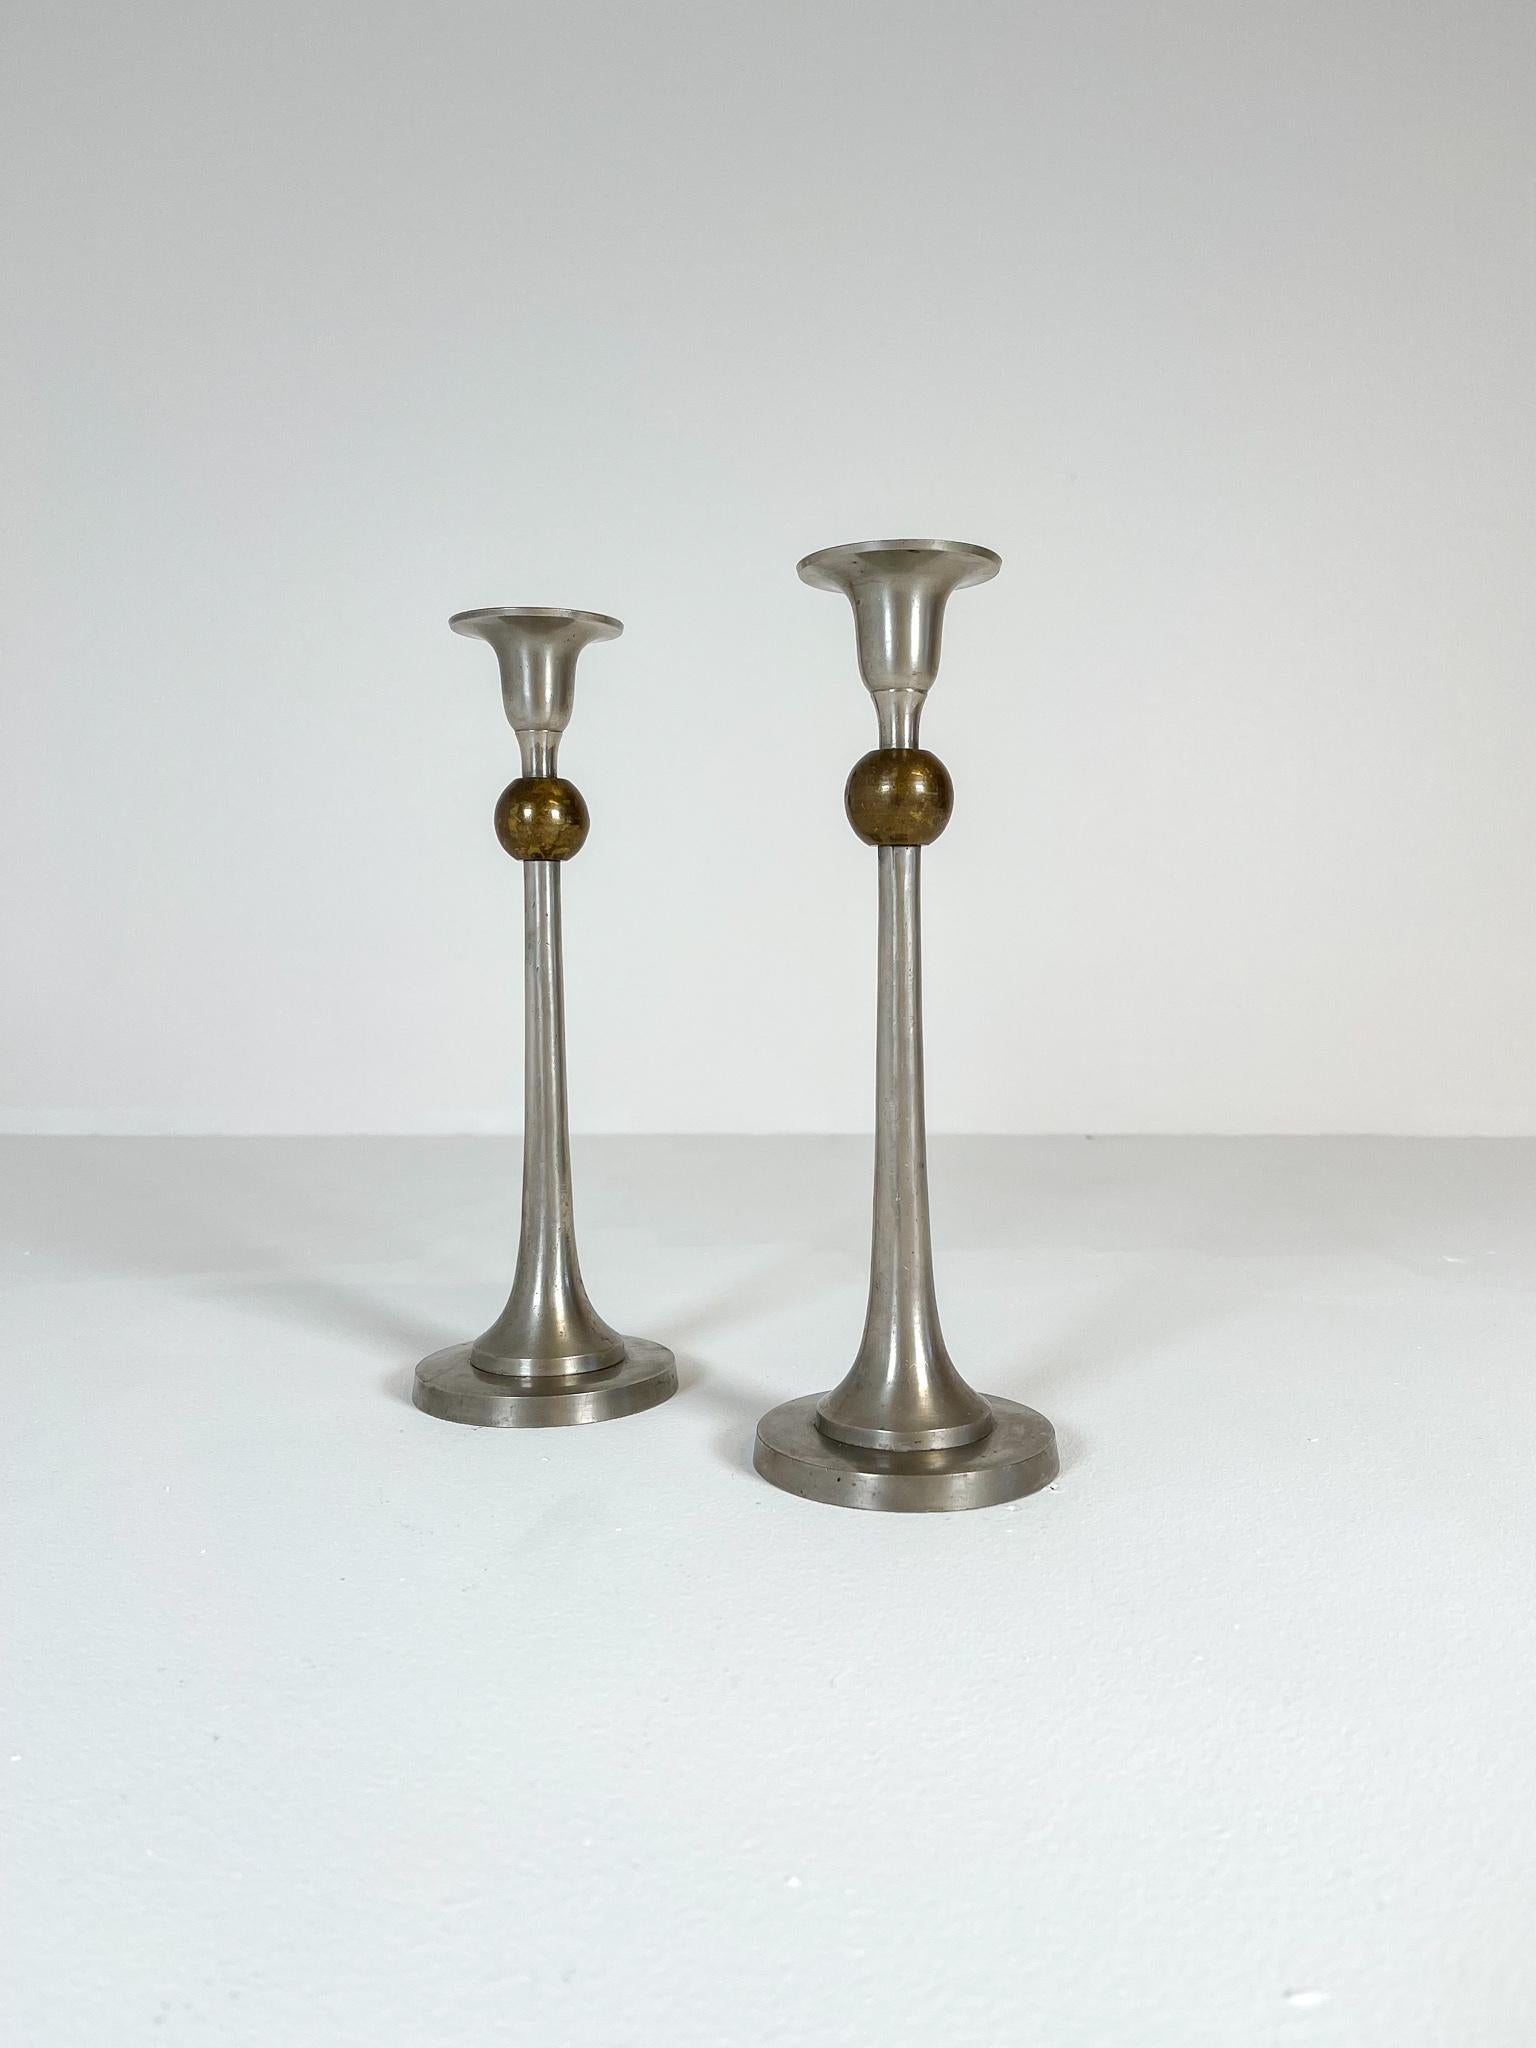 Art-Deco-Kerzenhalter aus Zinn und Messing, hergestellt in Schweden in den 1930er Jahren. Diese wundervollen Skulpturen sind in einer echten Art-Deco-Form gefertigt, mit einem Sockel und einer Spitze aus Zinn und einer Kugel aus Messing. 

Guter